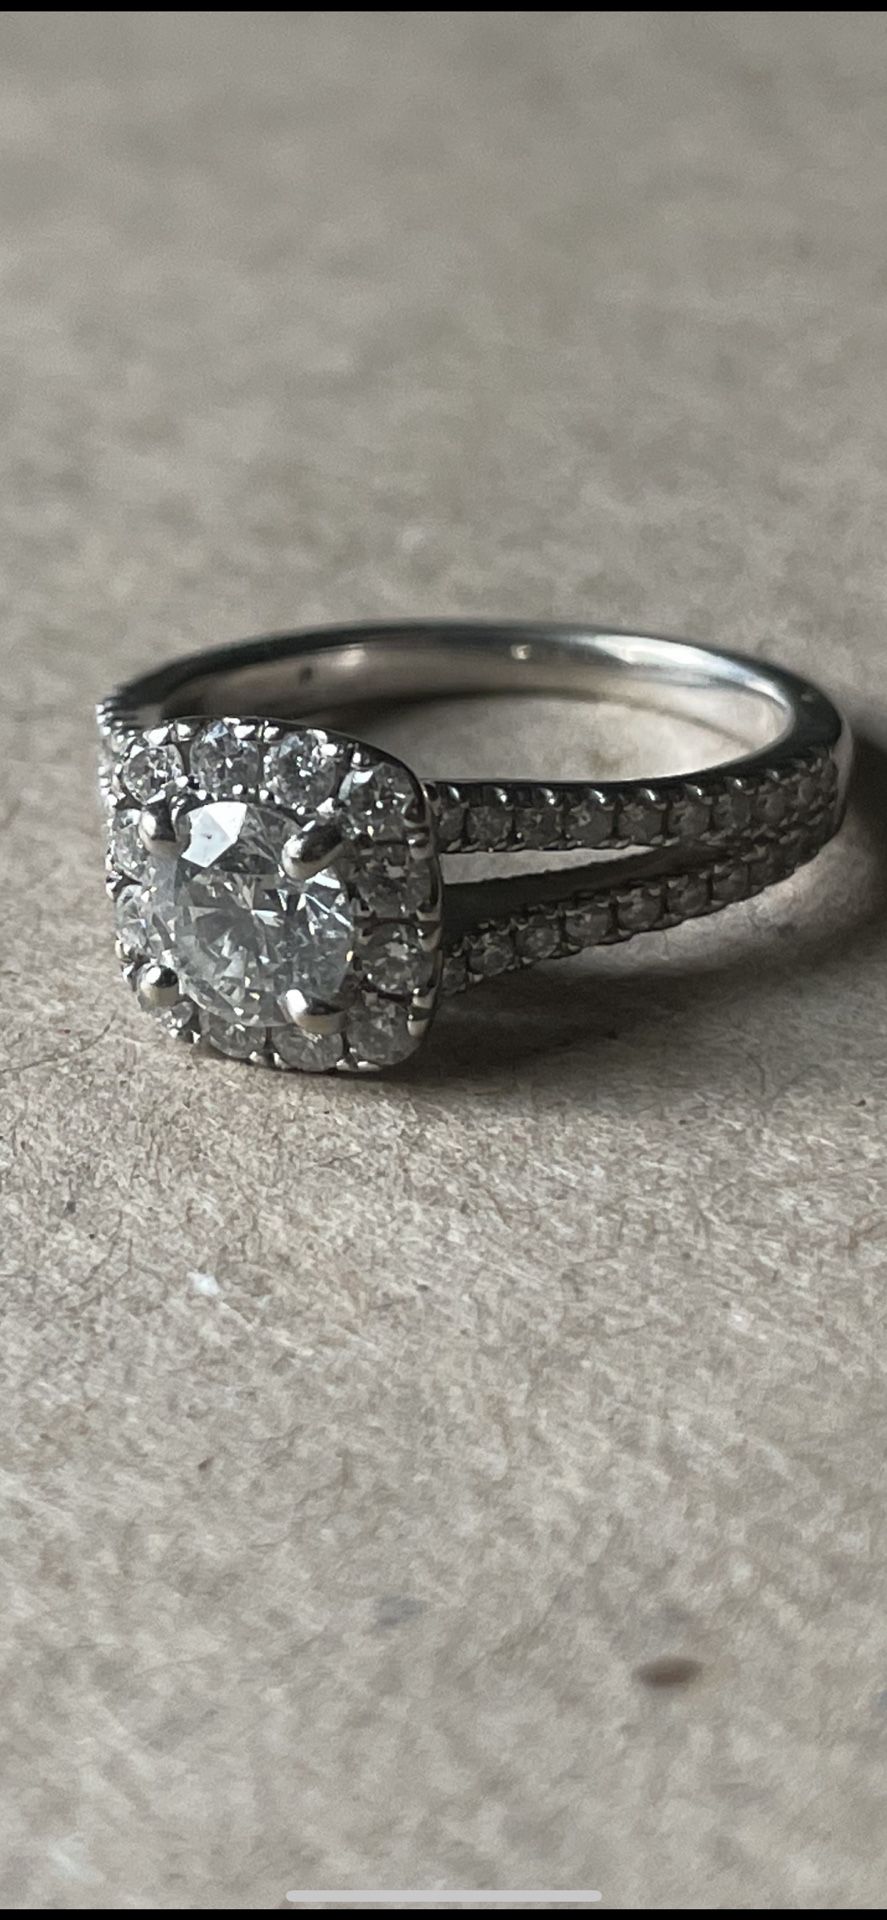 14 Karat White Gold Engagement Ring